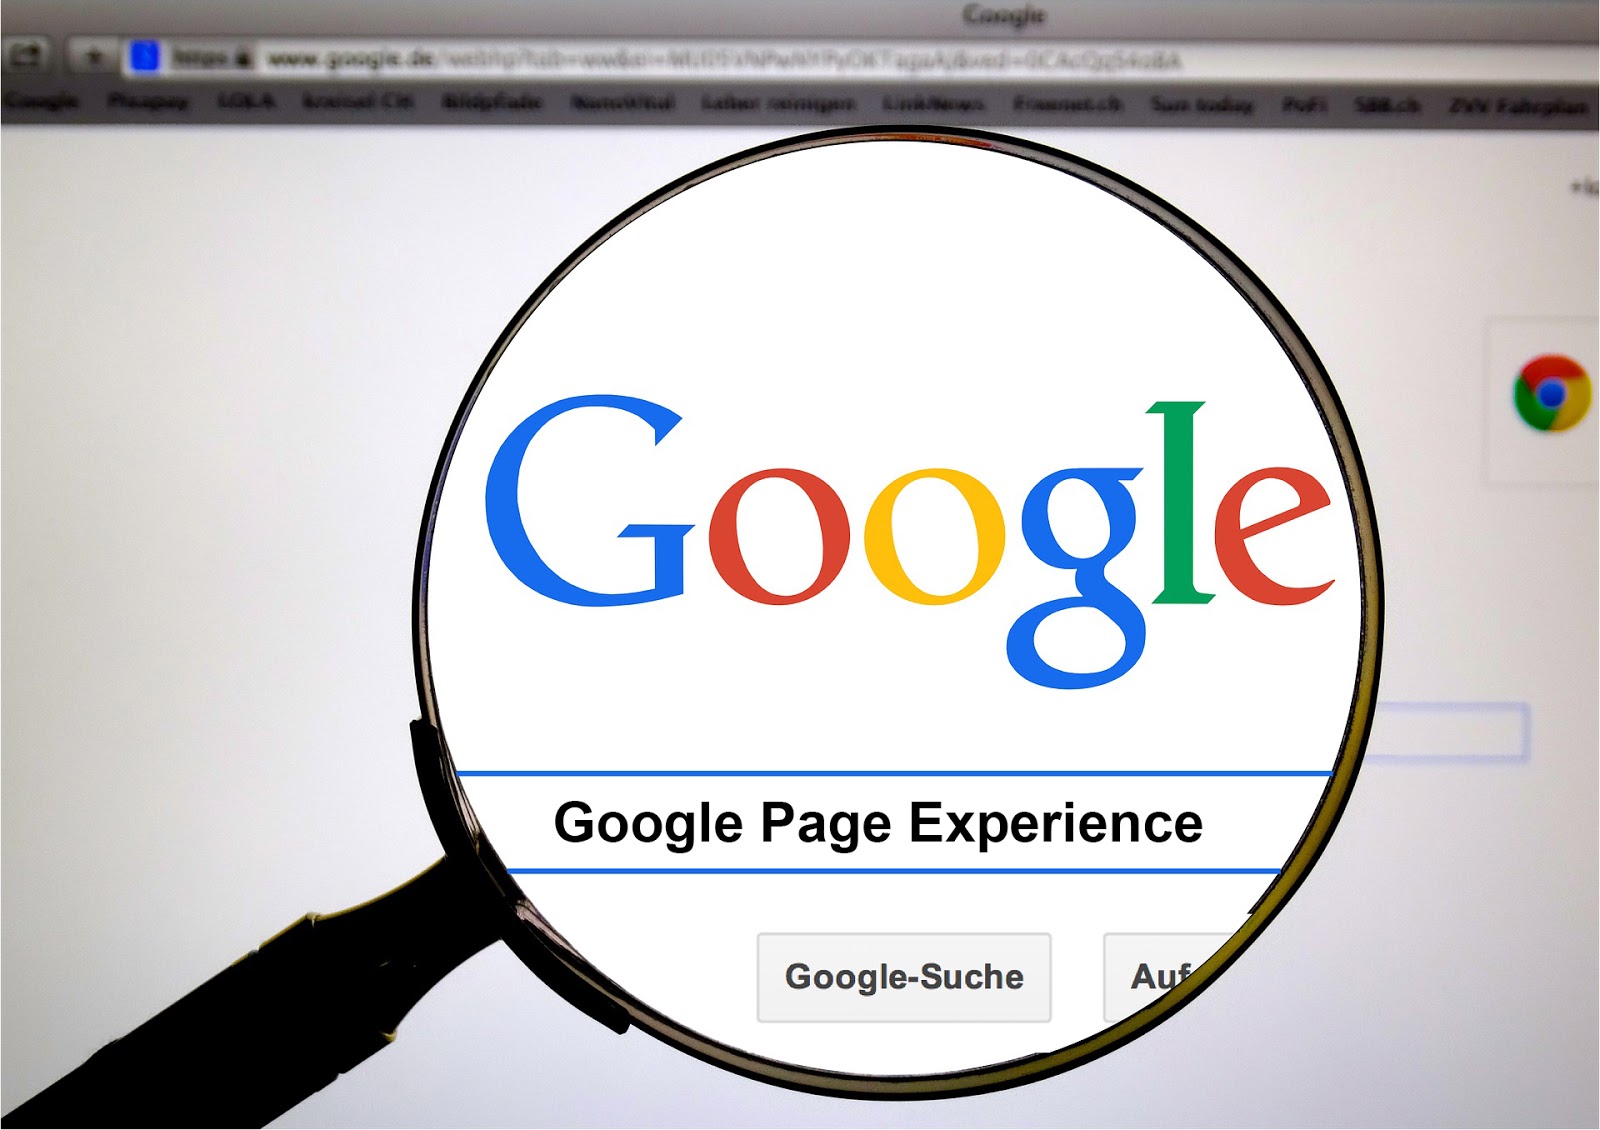 Lupa aumentando a palavra Google em uma tela de computador. Embaixo da palavra, entre duas linhas azuis, está a frase Google Page Experience. 